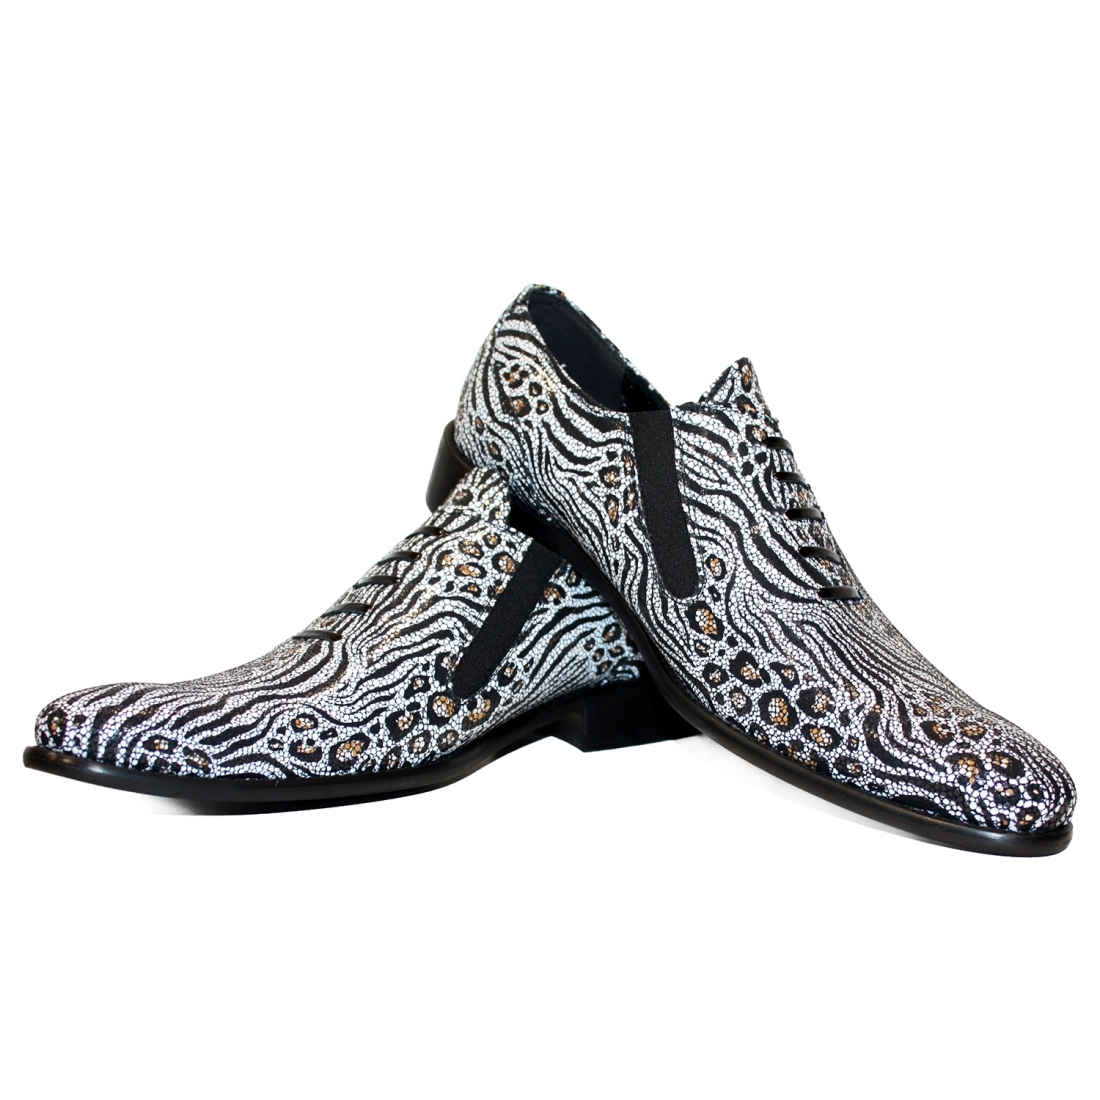 Modello Safarro - Mocassini - Handmade Colorful Italian Leather Shoes